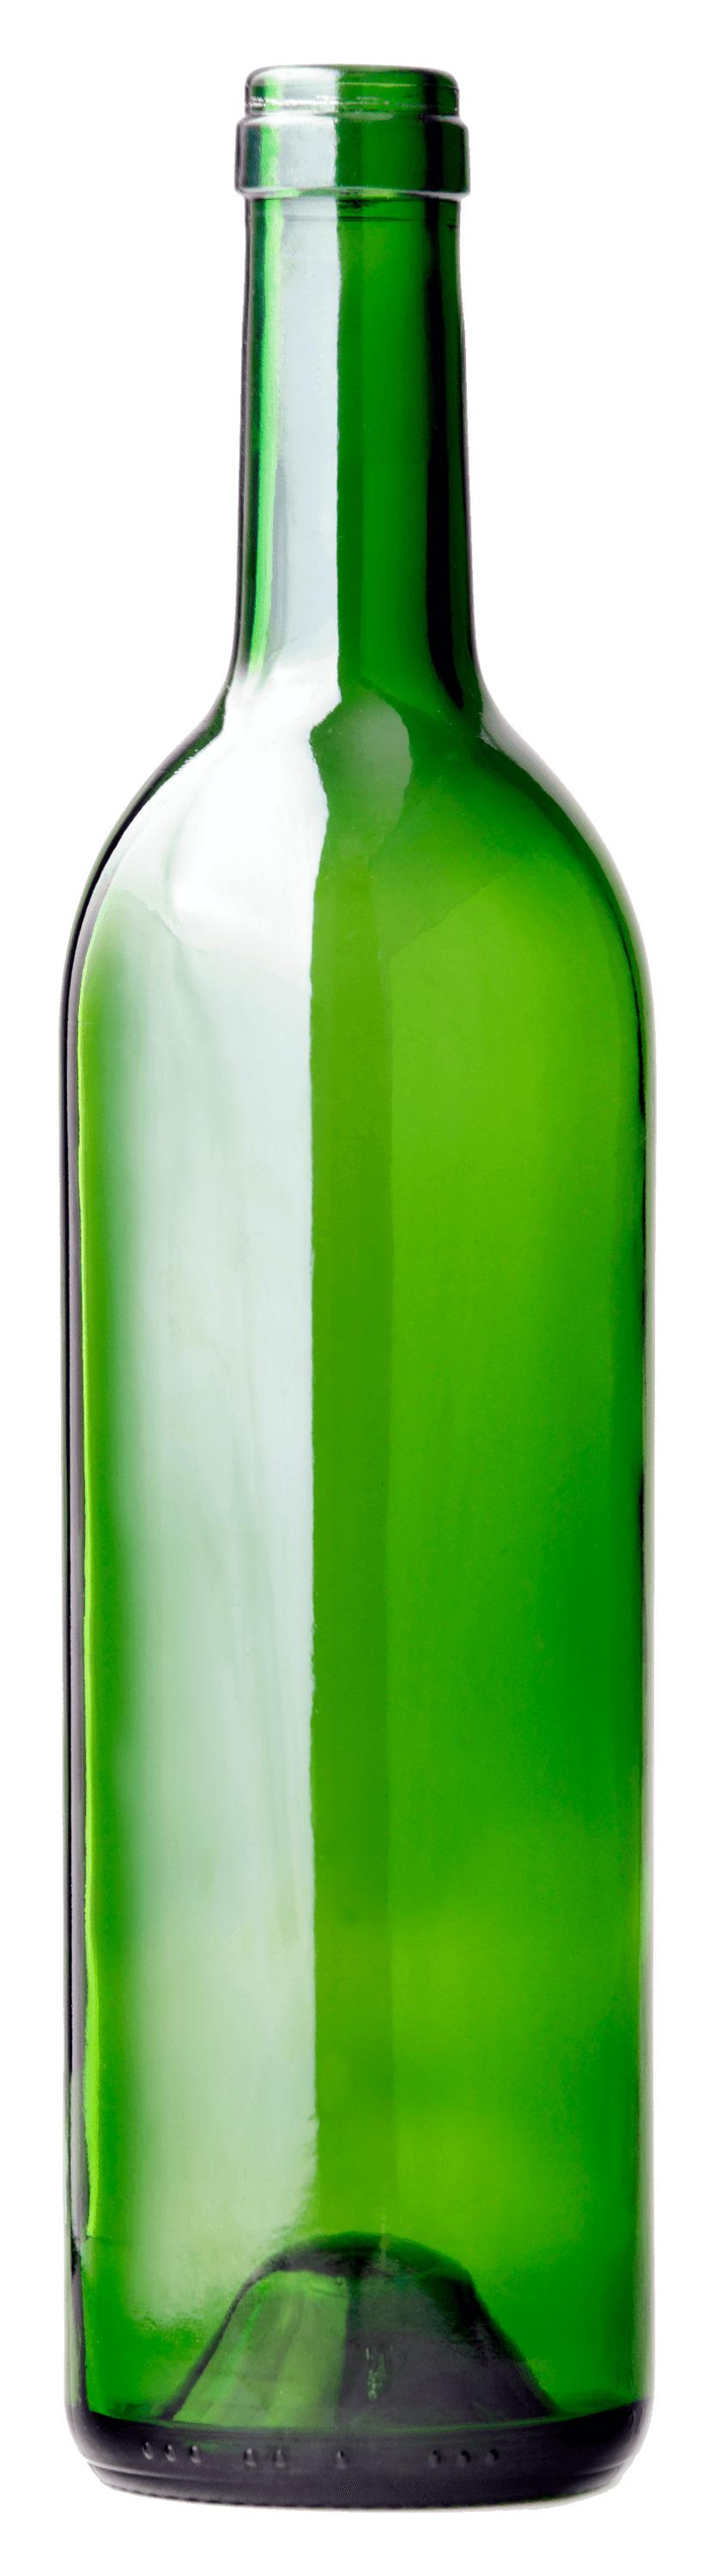 Bottle Long Green png transparent